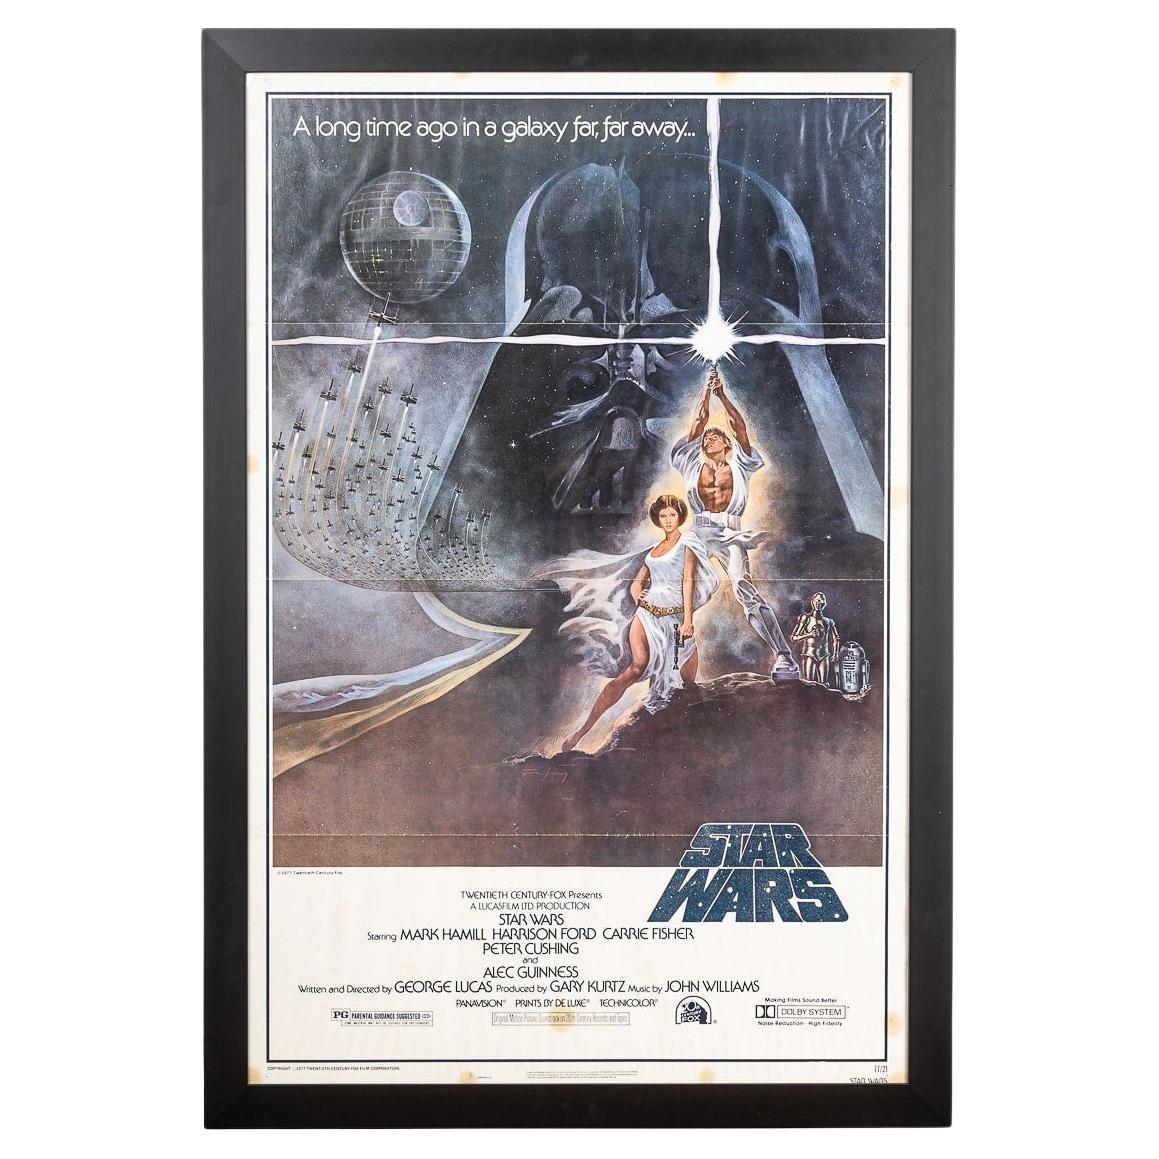 Affiche originale de sortie aux États-Unis de Star Wars « A New Hope » style A Poster 77/21 vers 1977